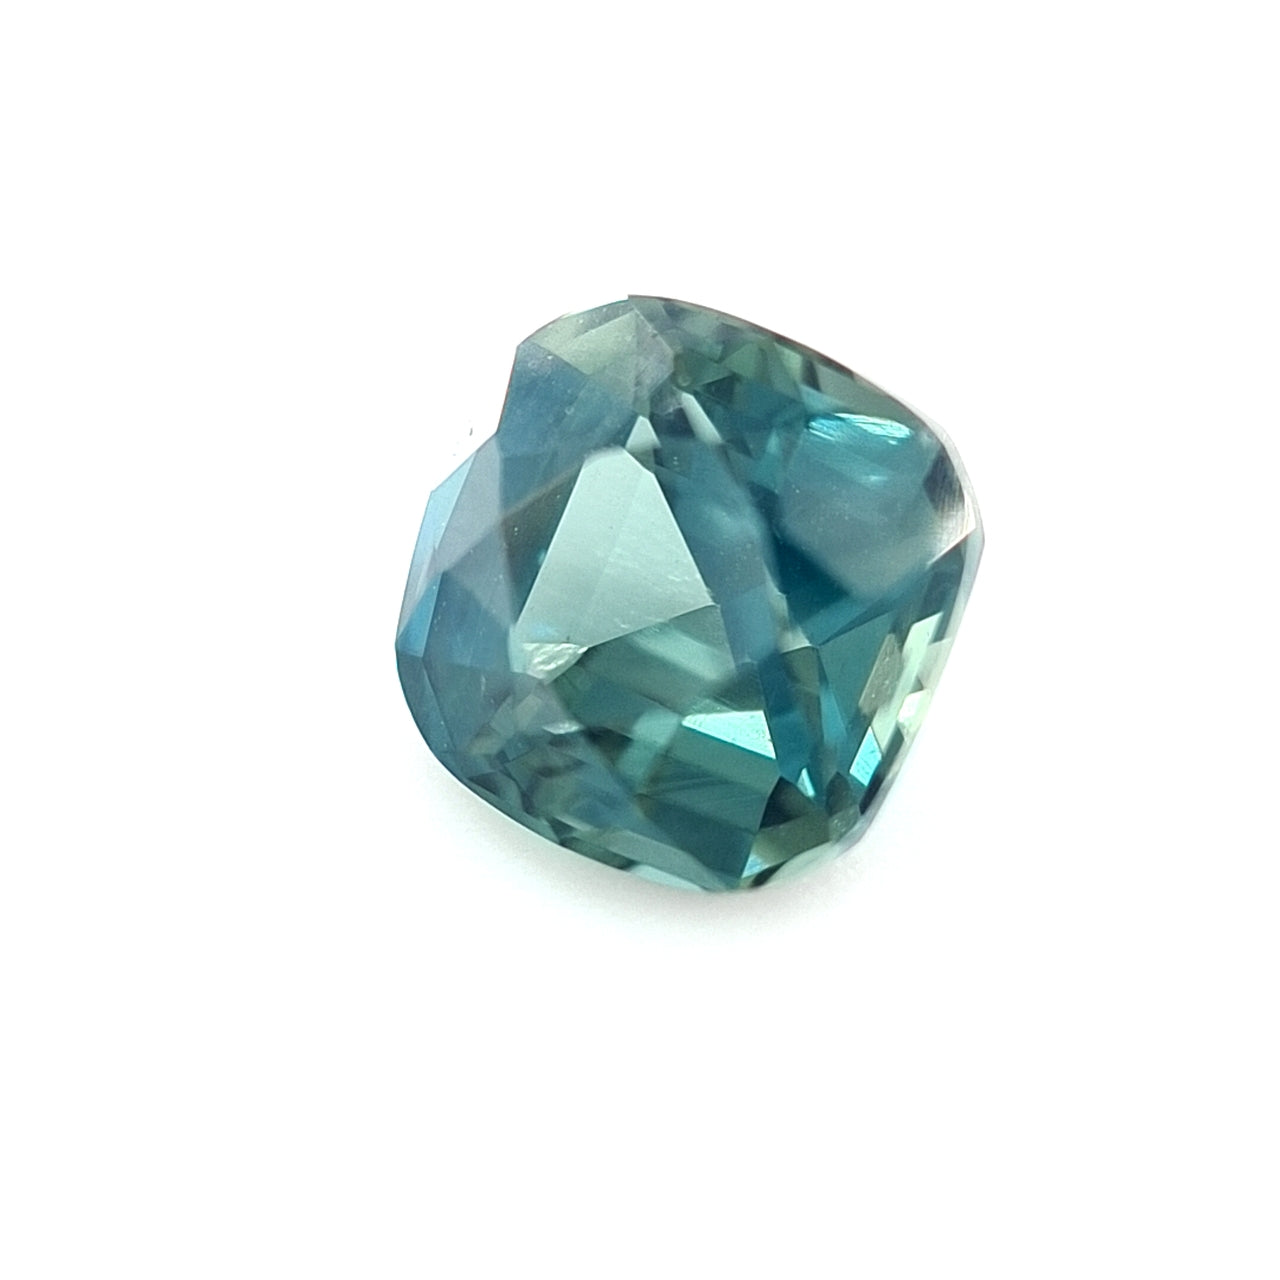 1.00ct Nigerian Sapphire, Blue - Cushion